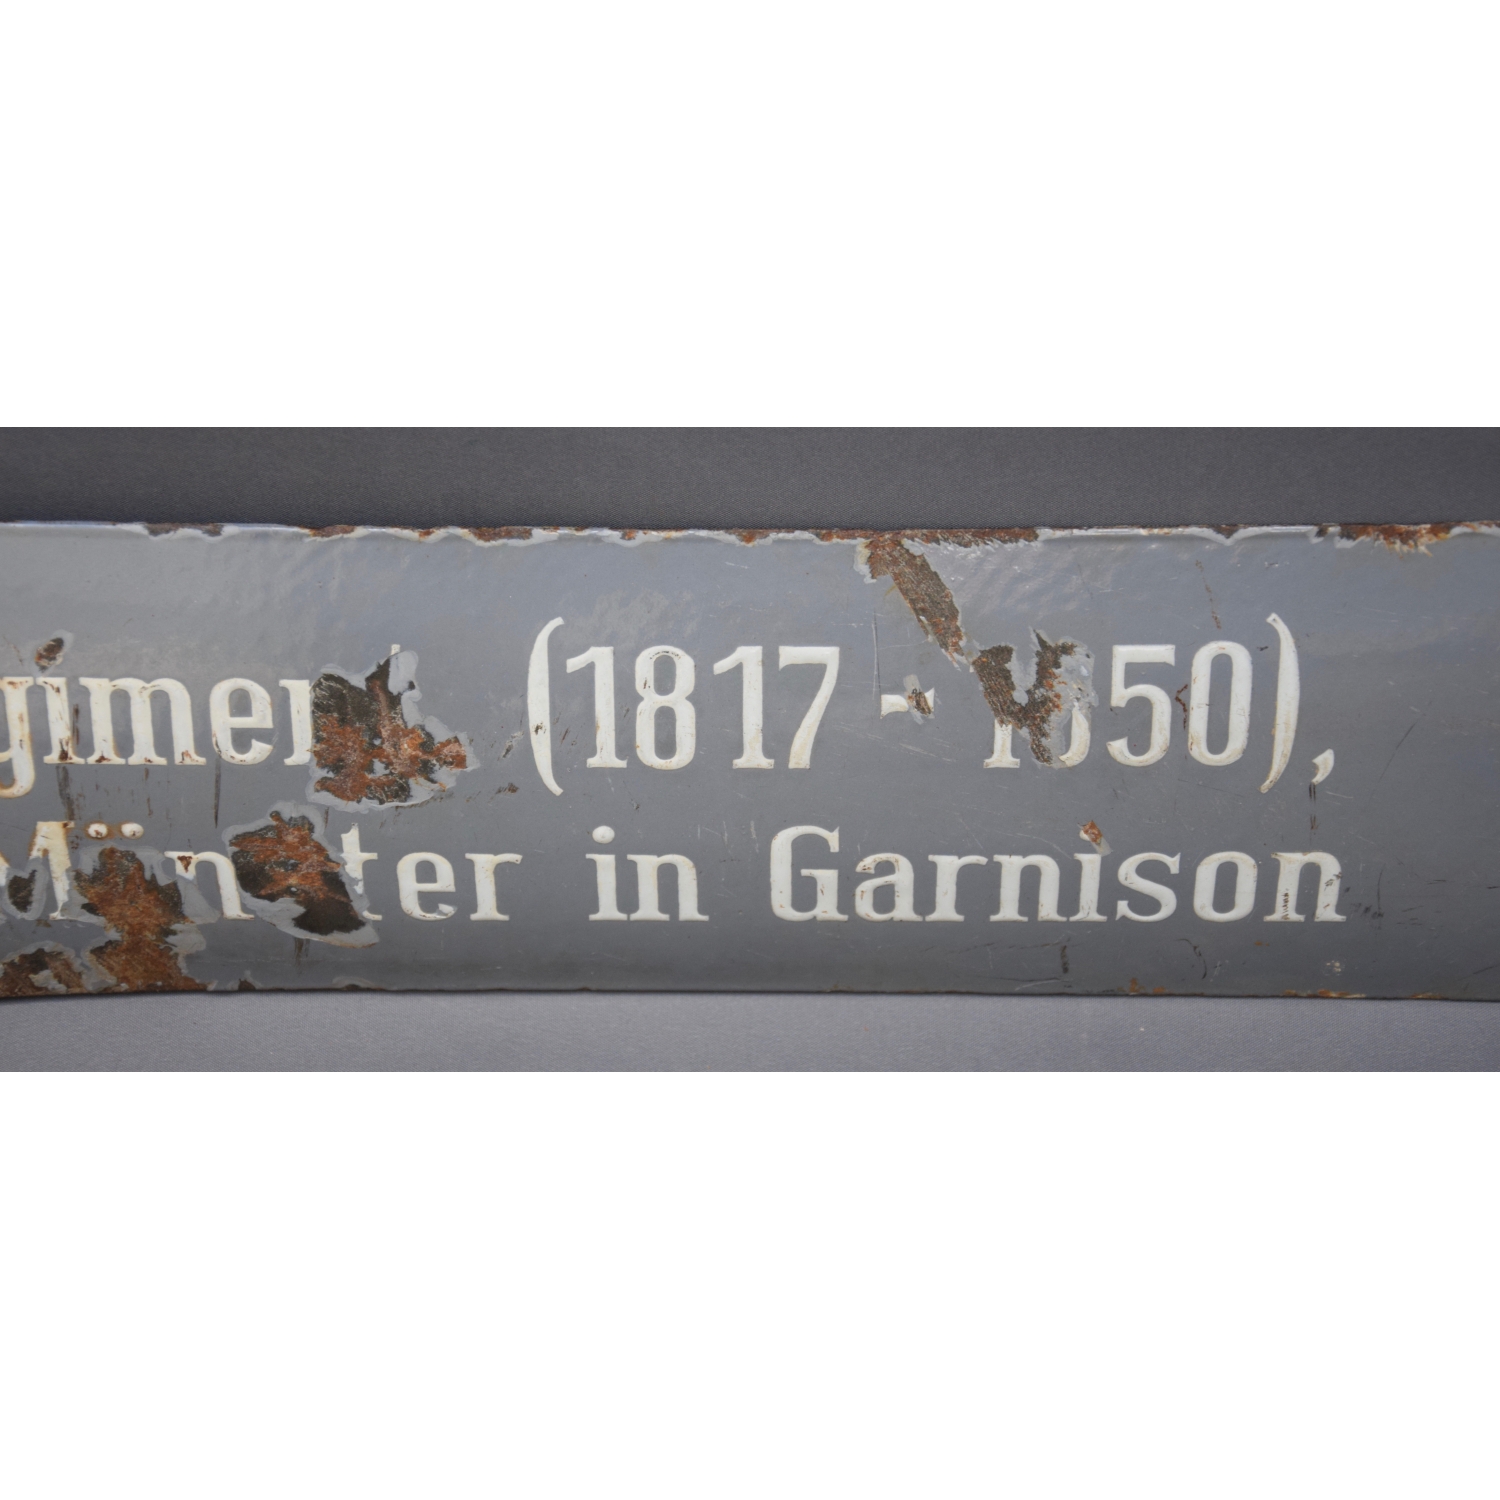 Emaille Schild auf grauer Emaille "13.Infanterie Regiment(1817-1850) Münster in Garnison"